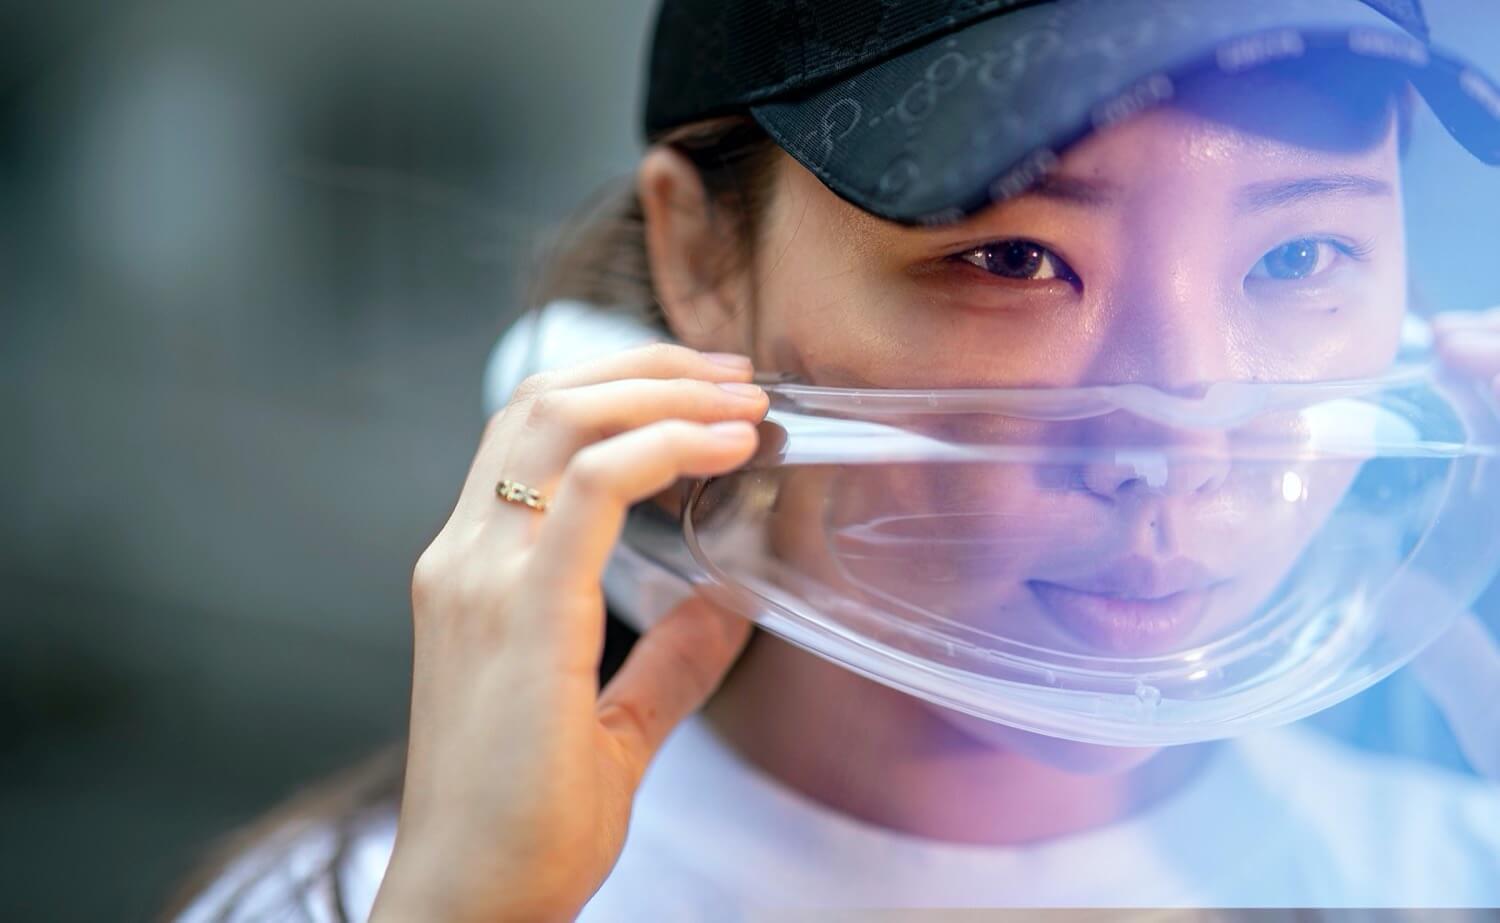 Las máscaras de protección para la cara, purificadores de aire — la tendencia 2020?